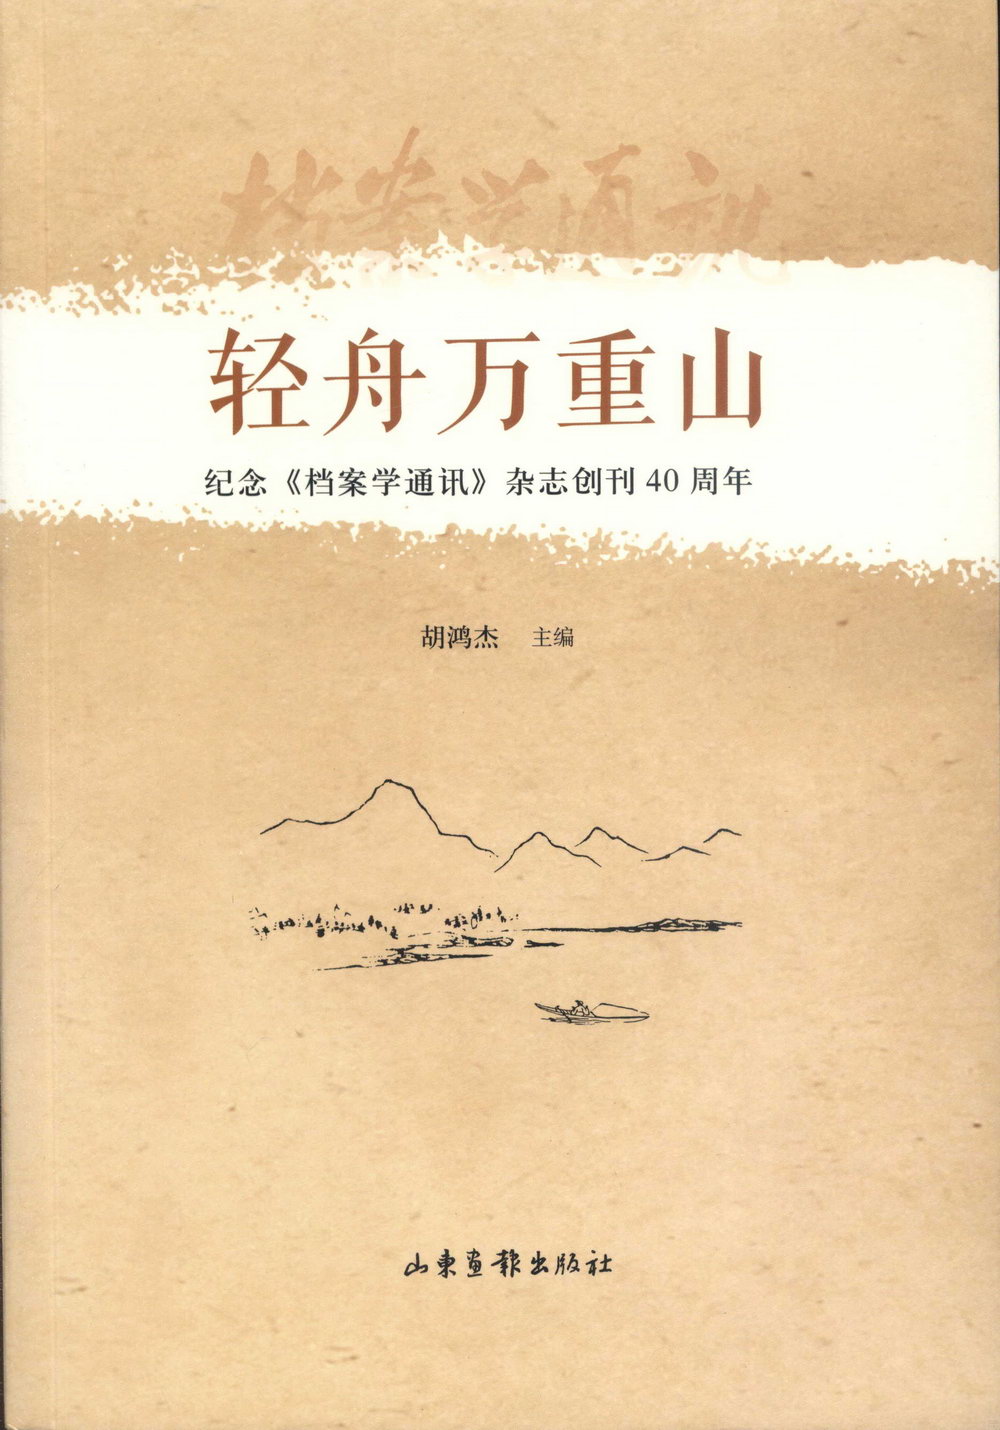 輕舟萬重山：紀念《檔案學通訊》雜誌創刊40周年